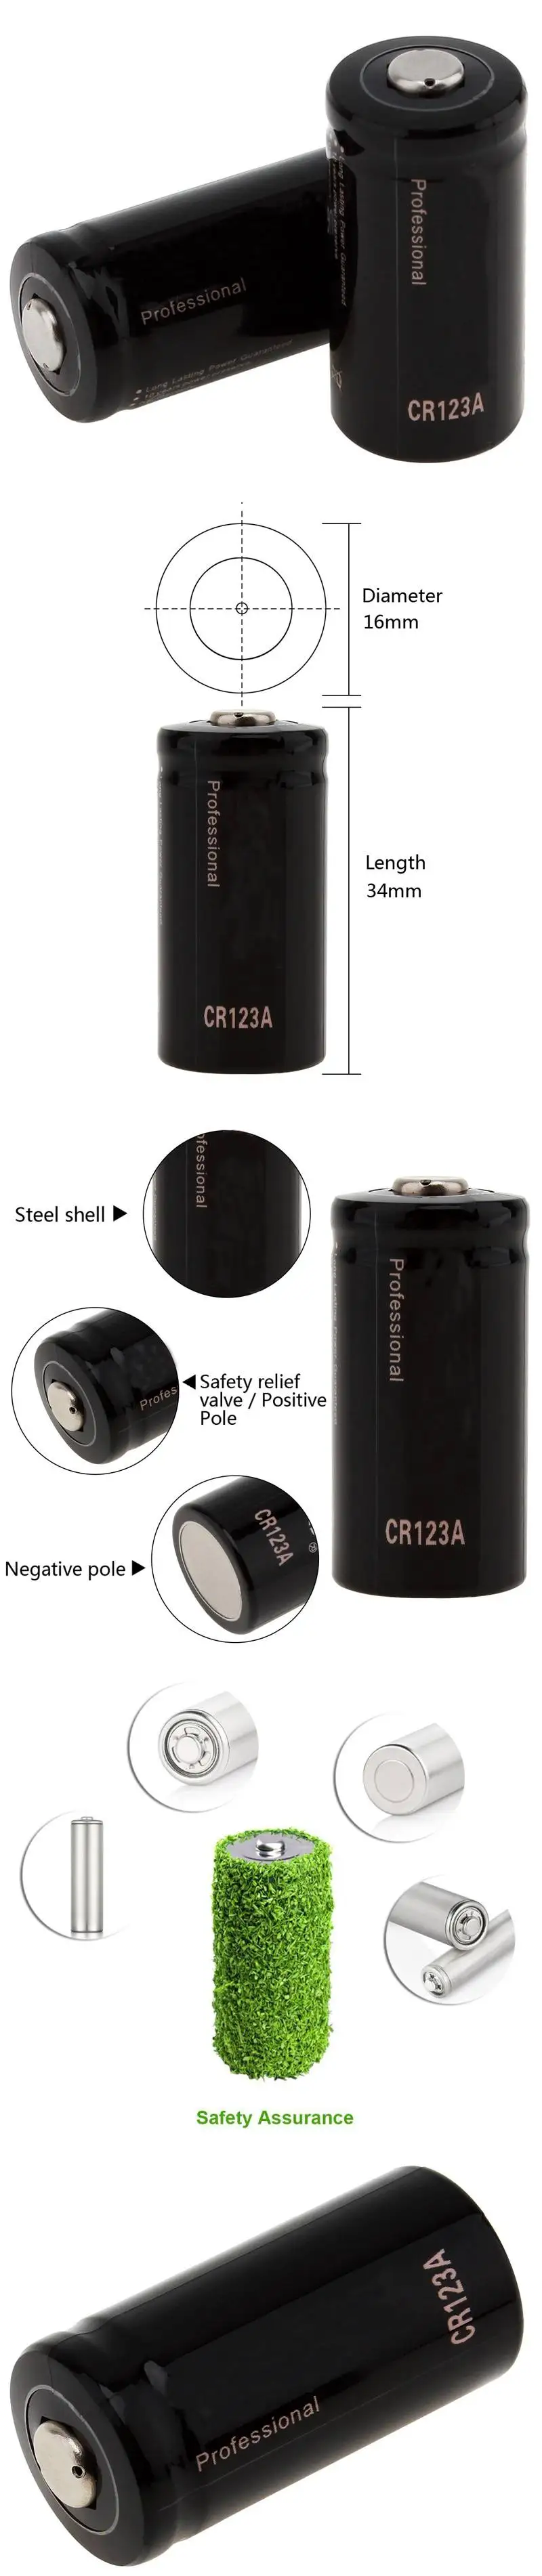 2 шт. Soshine 3 в 1600 мАч CR123A литиевые батареи литий-ионная батарея с батарейным отсеком чехол для Flashilight инструмент игрушка